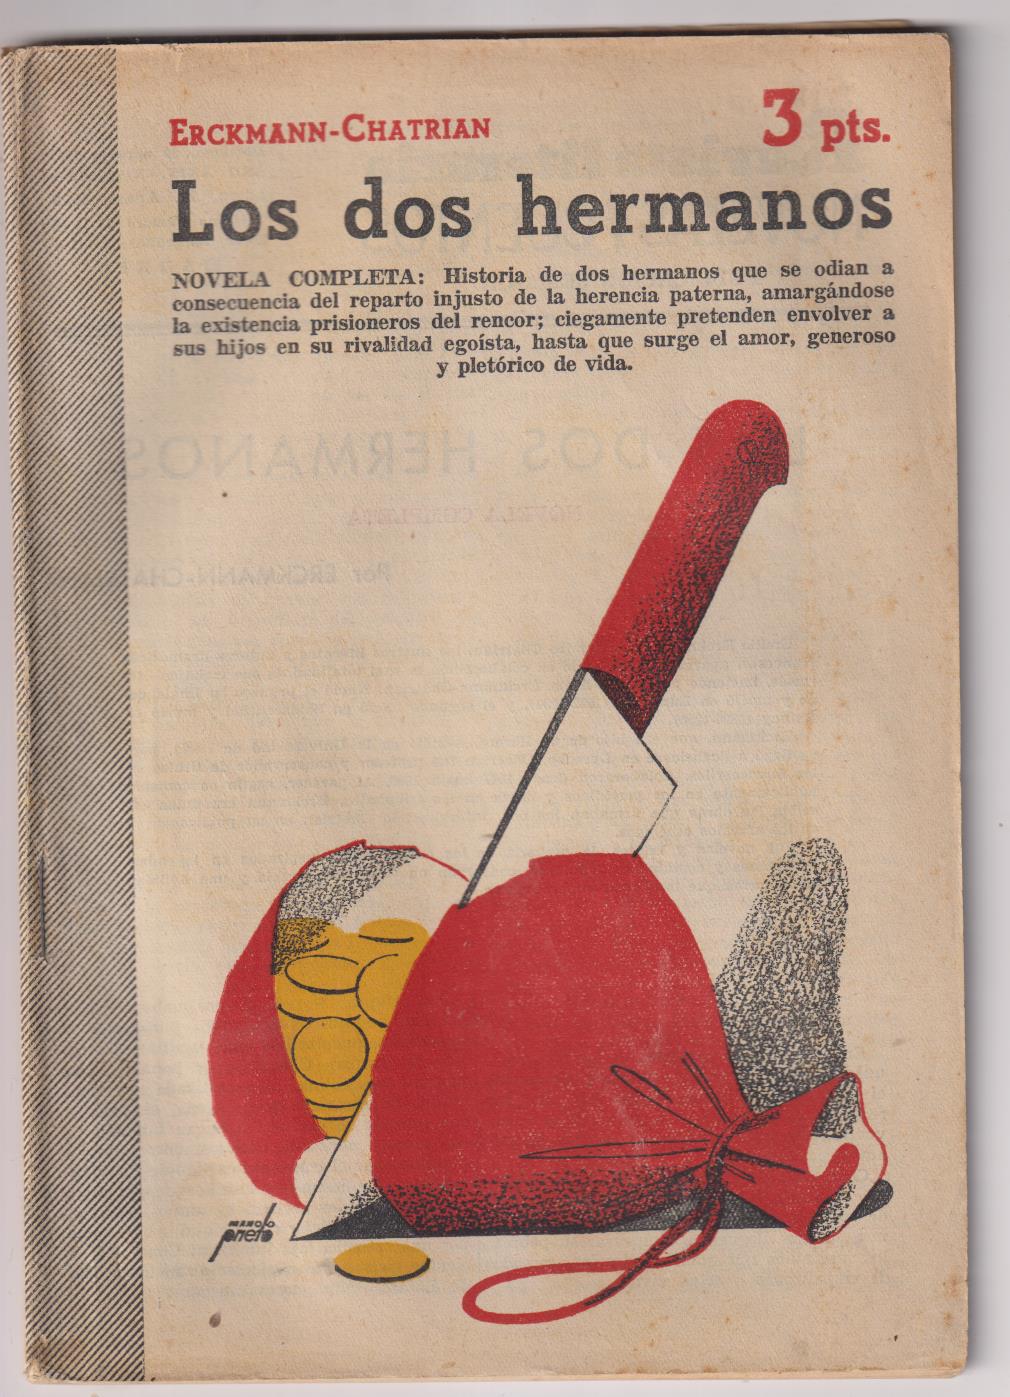 Revista Literaria Novelas y Cuentos nº 1119. Los dos hermanos por Erckman-chatrian, 1952